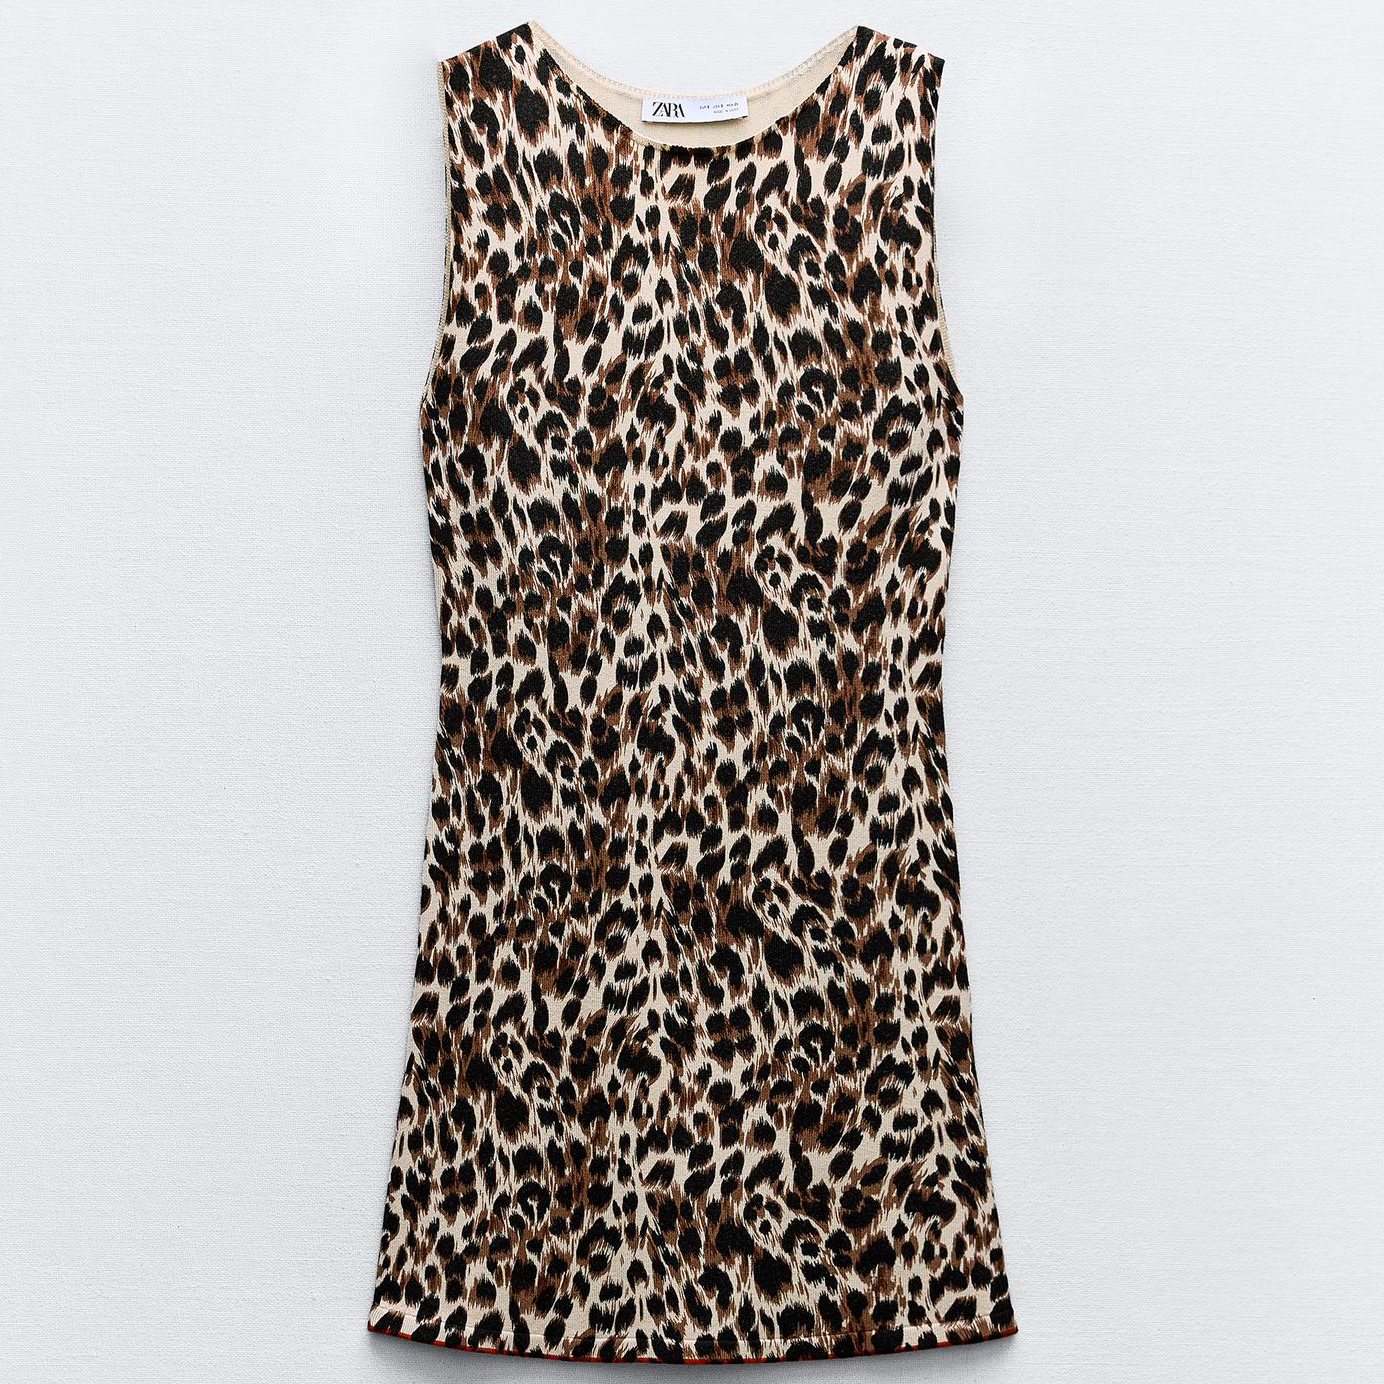 Платье Zara Animal Print Knit, коричневый/мультиколор платье zara satin leopard animal print коричневый мультиколор